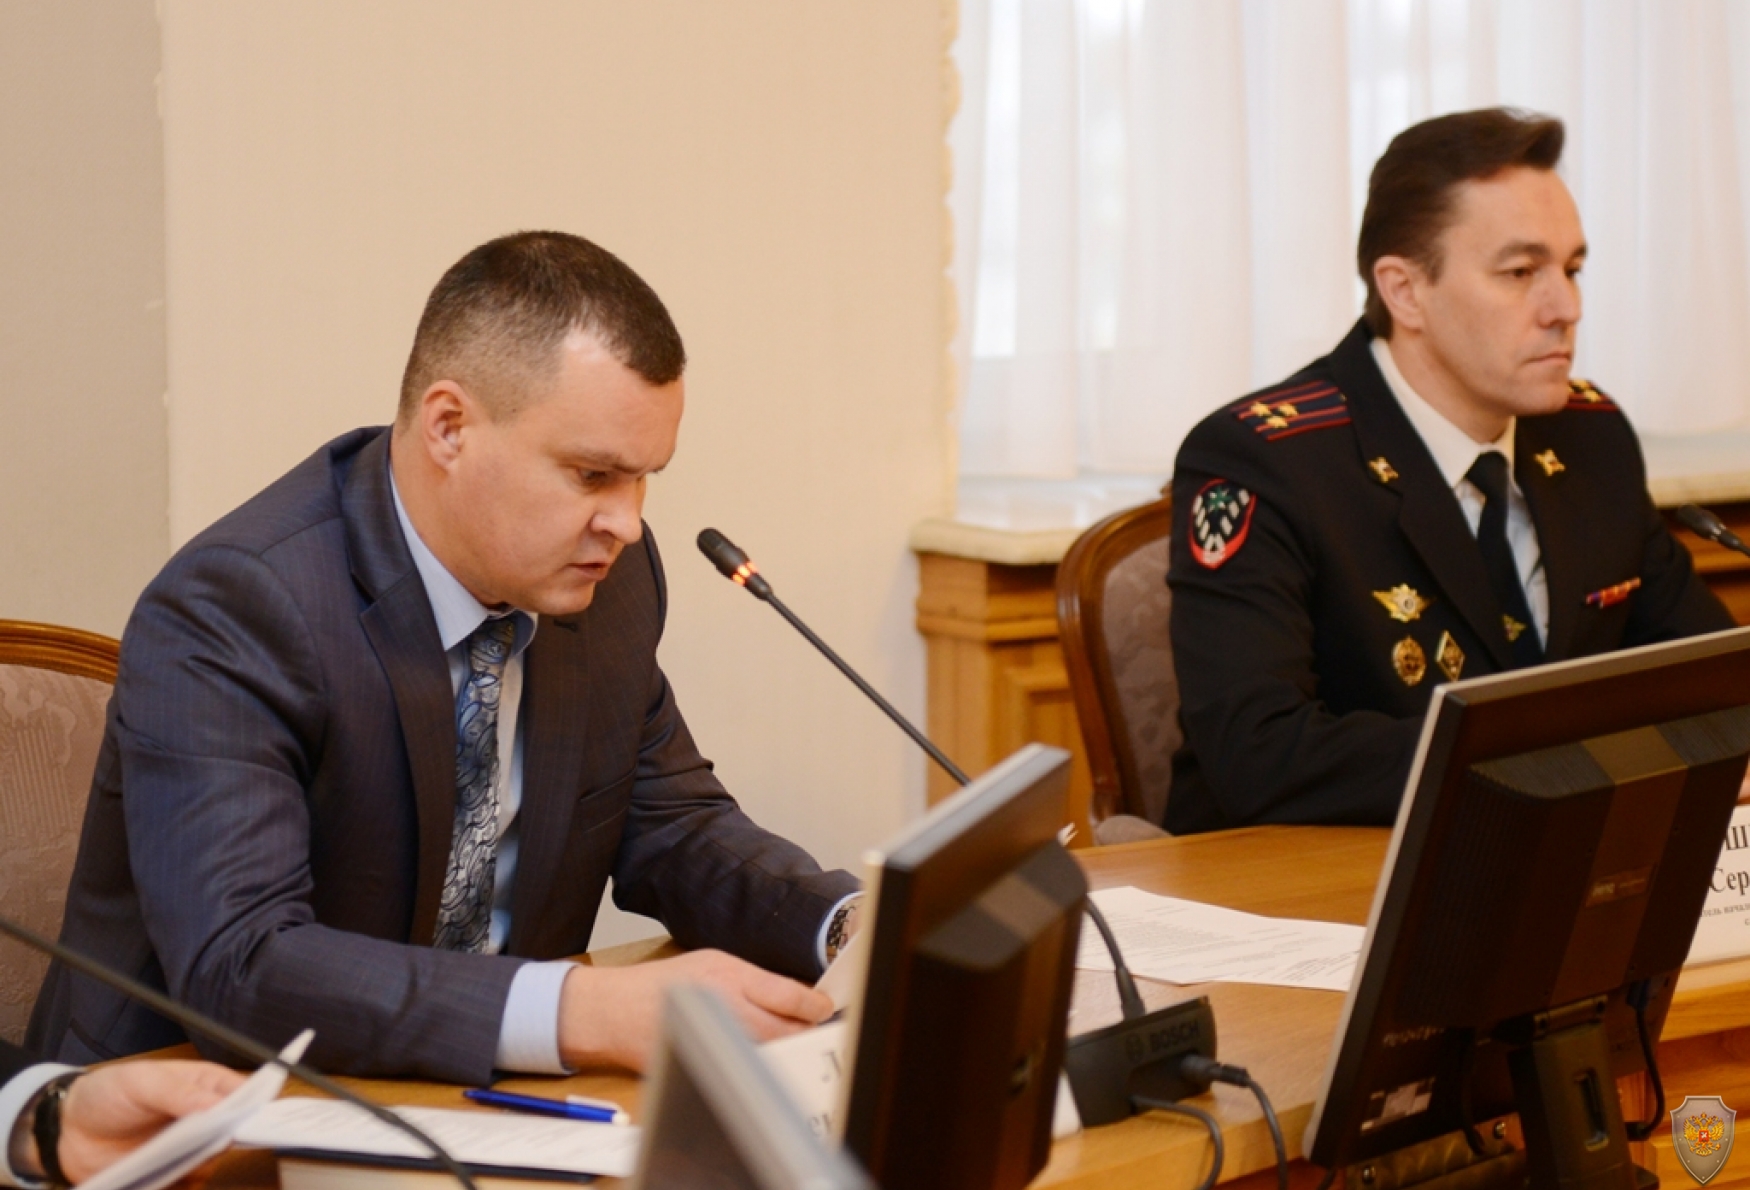 Руководитель подразделения Управления ФСБ России по Смоленской области А.В.Лопатин докладывает по первому вопросу заседания